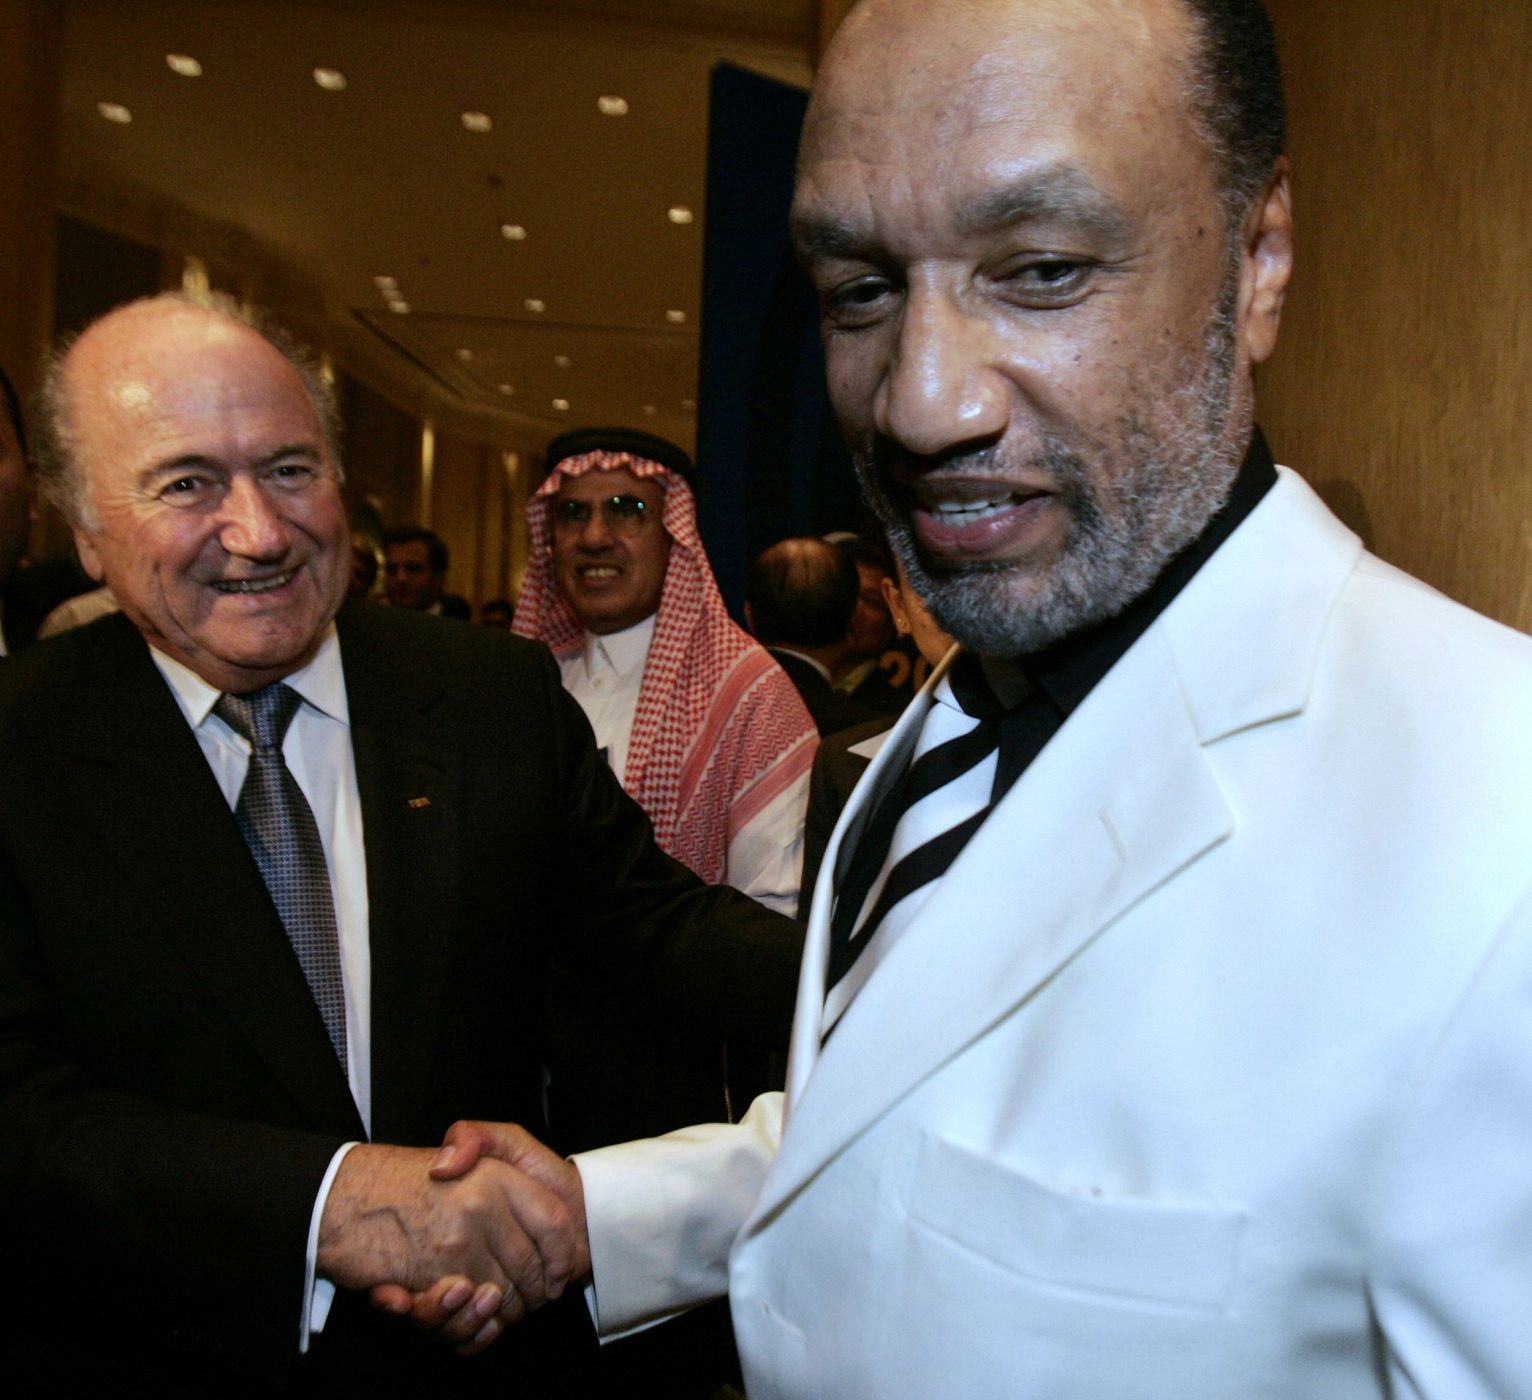 El presidente de la FIFA, Blatter, saluda a Bin Hamman, miembro del Comité Ejecutivo del mismo organismo, en una imagen de archivo.